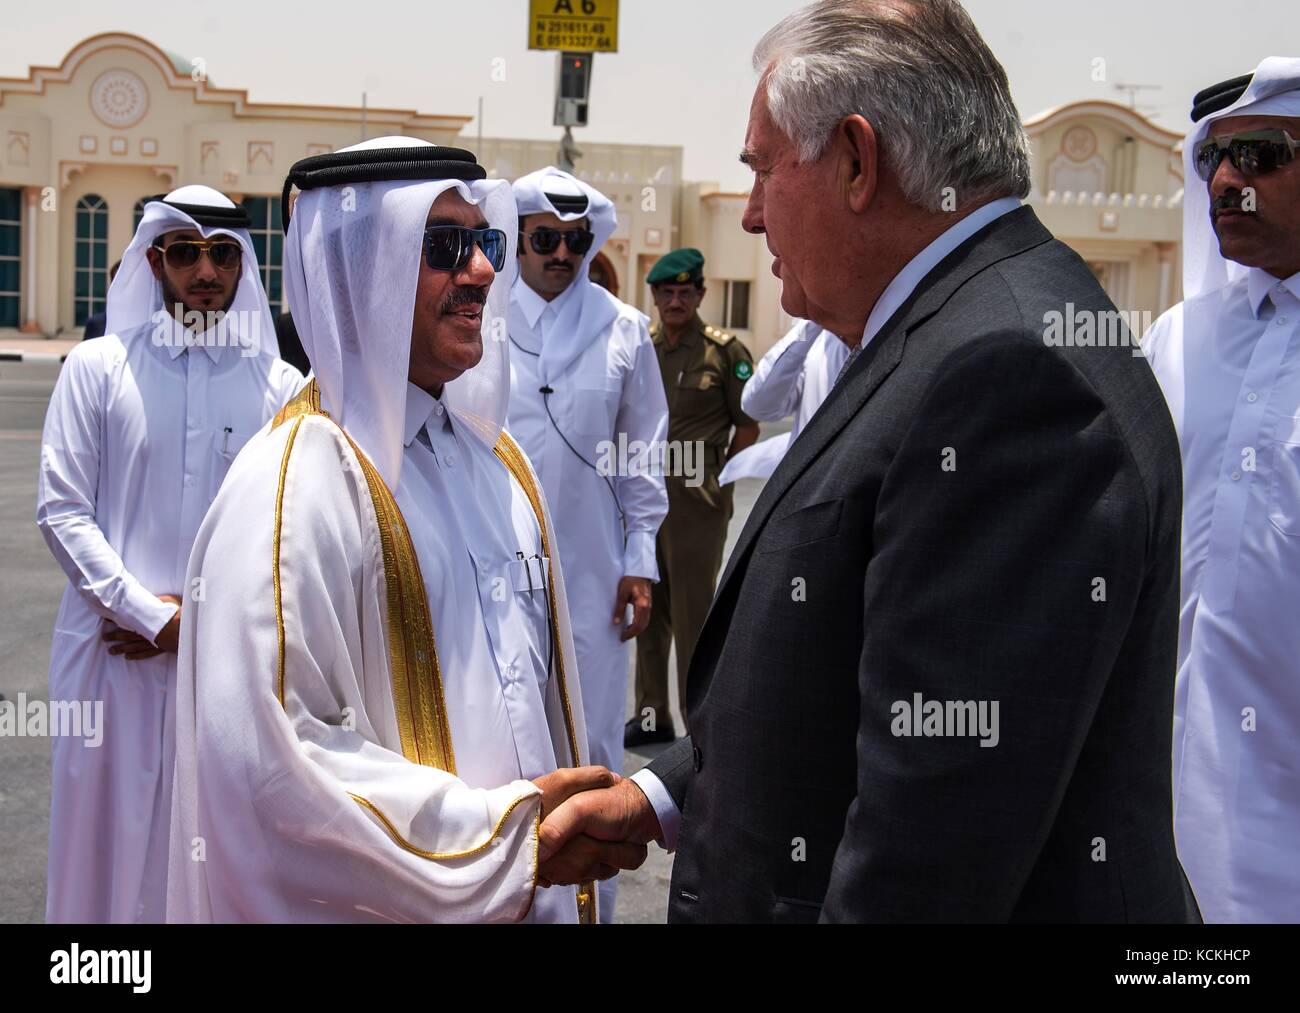 L'émir du Qatar, Cheikh Tamim bin Hamad al Thani (à gauche) accueille la secrétaire d'État des États-Unis, Rex Tillerson lors de son arrivée à la mer 13 juillet 2017, à Doha, au Qatar. (Photo par Trevor t. mcbride via planetpix) Banque D'Images